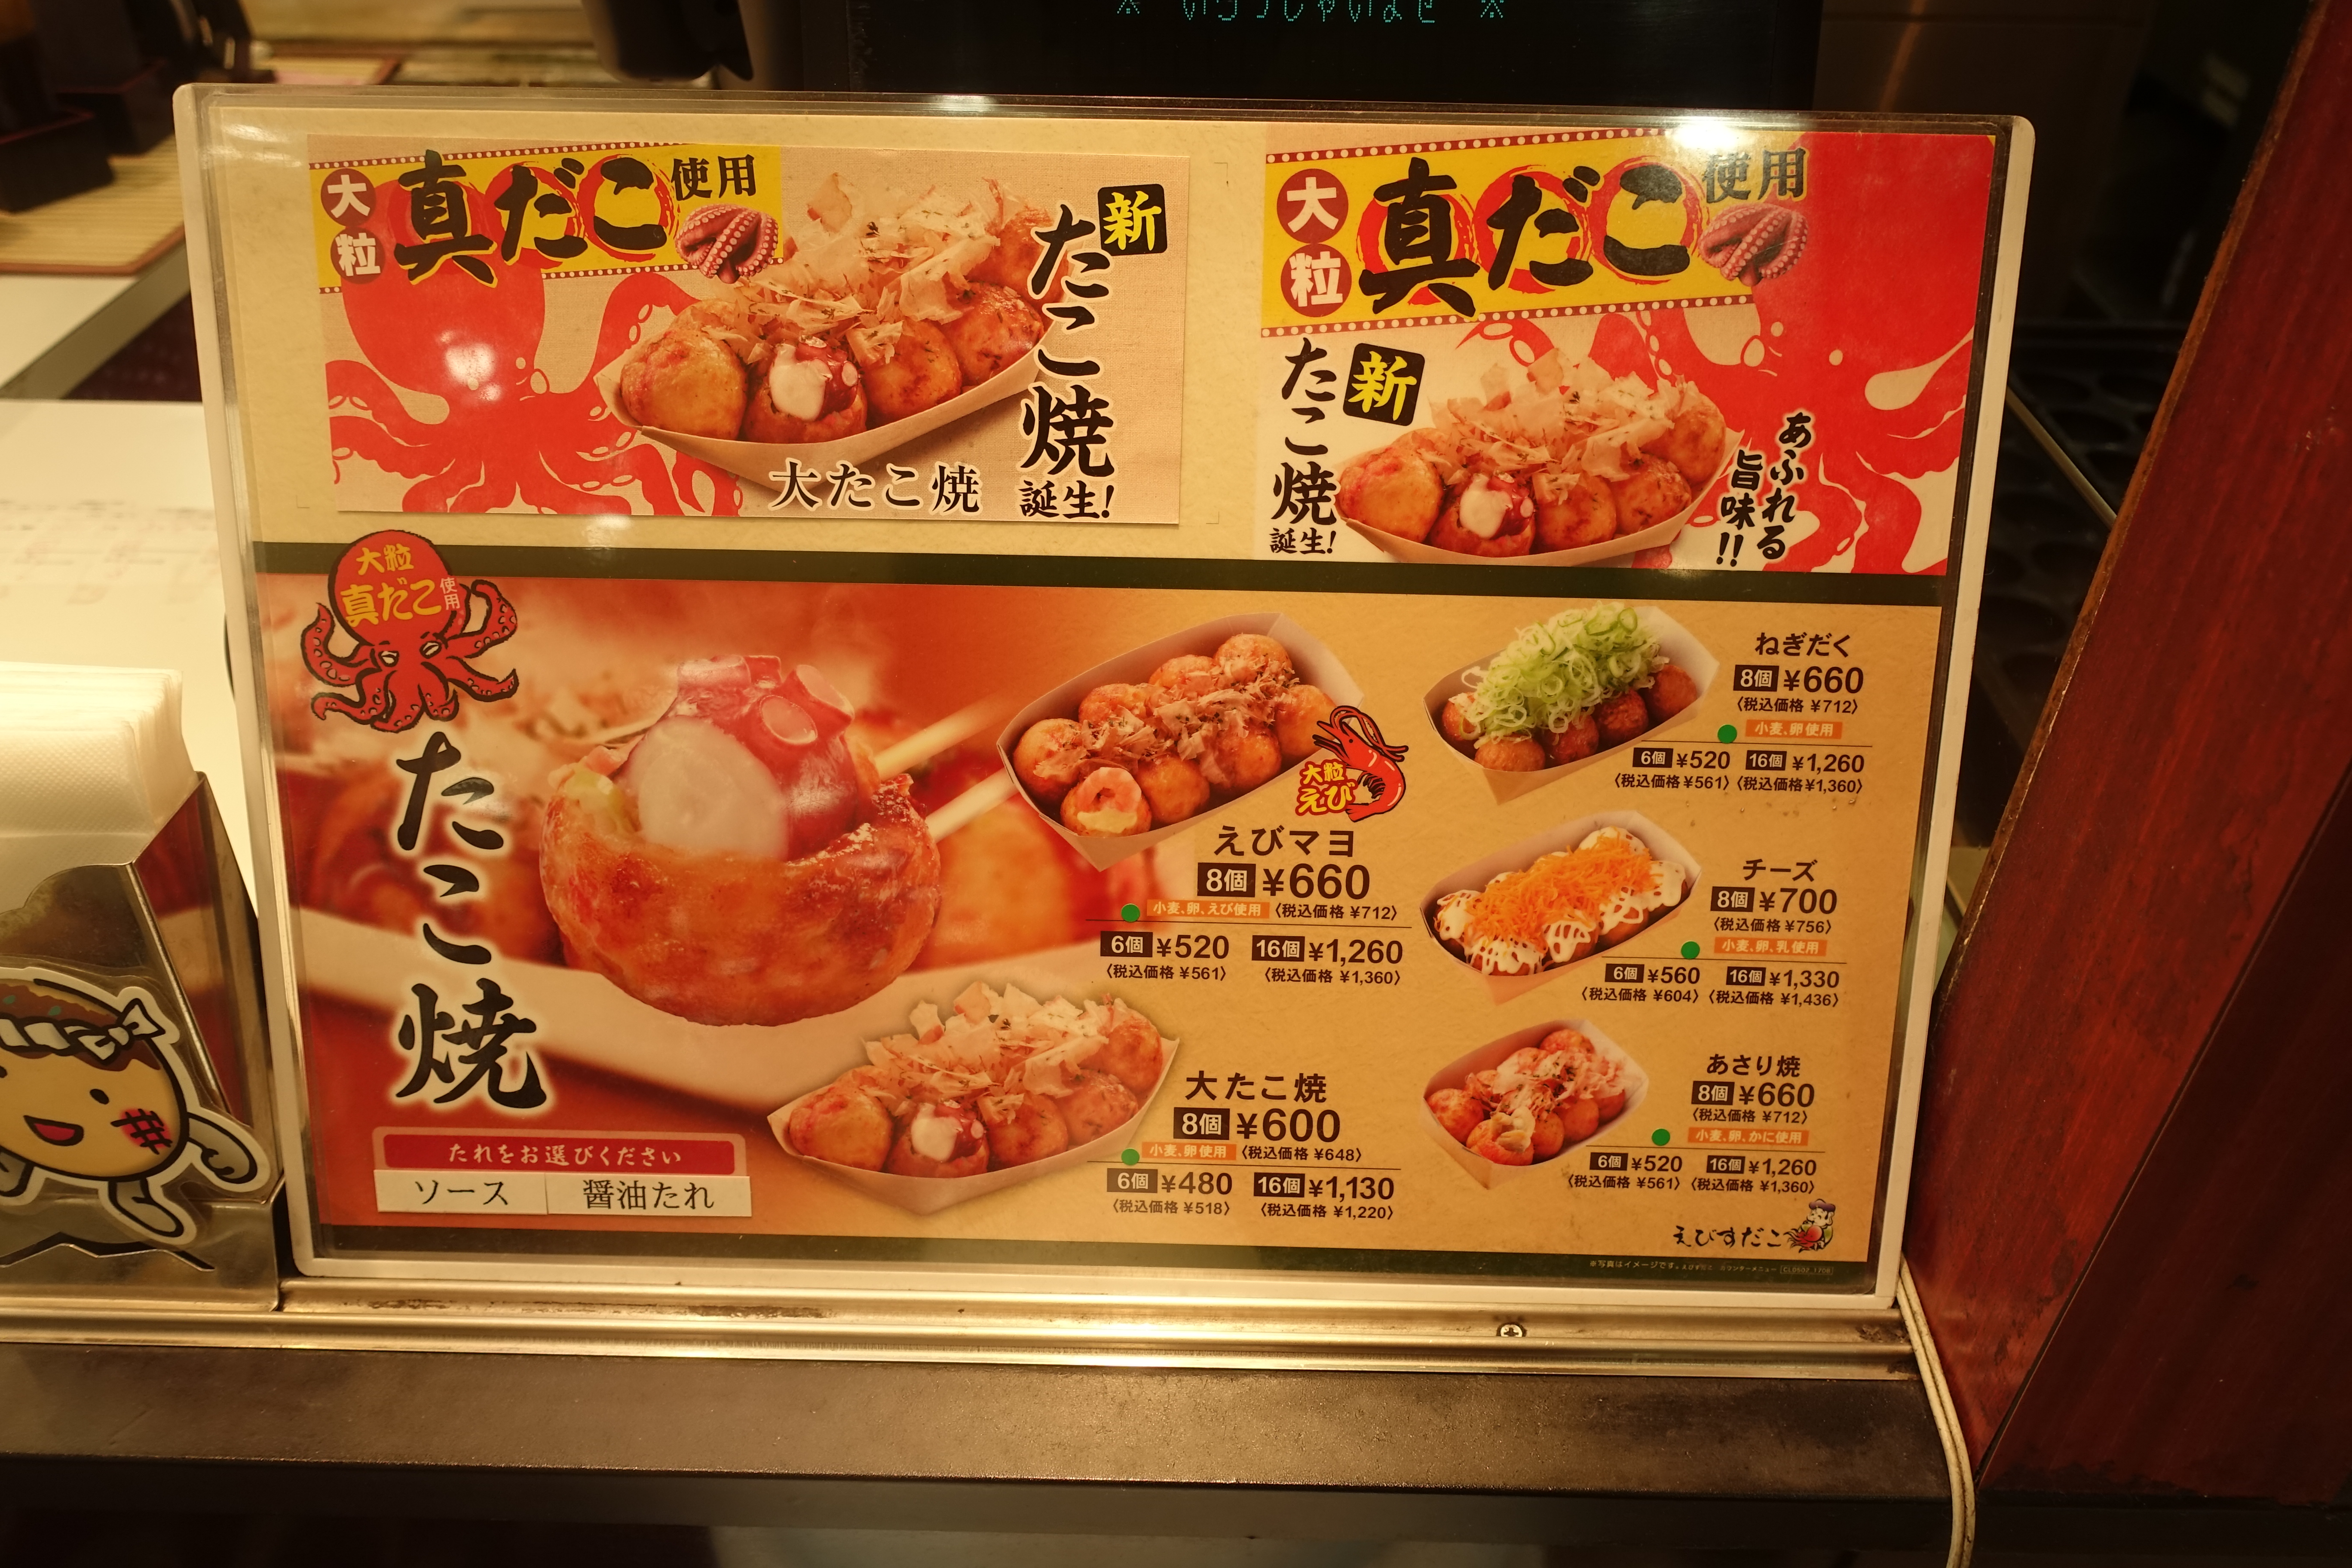 岡崎の西武百貨店にある えびすだこ トロッとするたこ焼きが人気 岡崎にゅーす